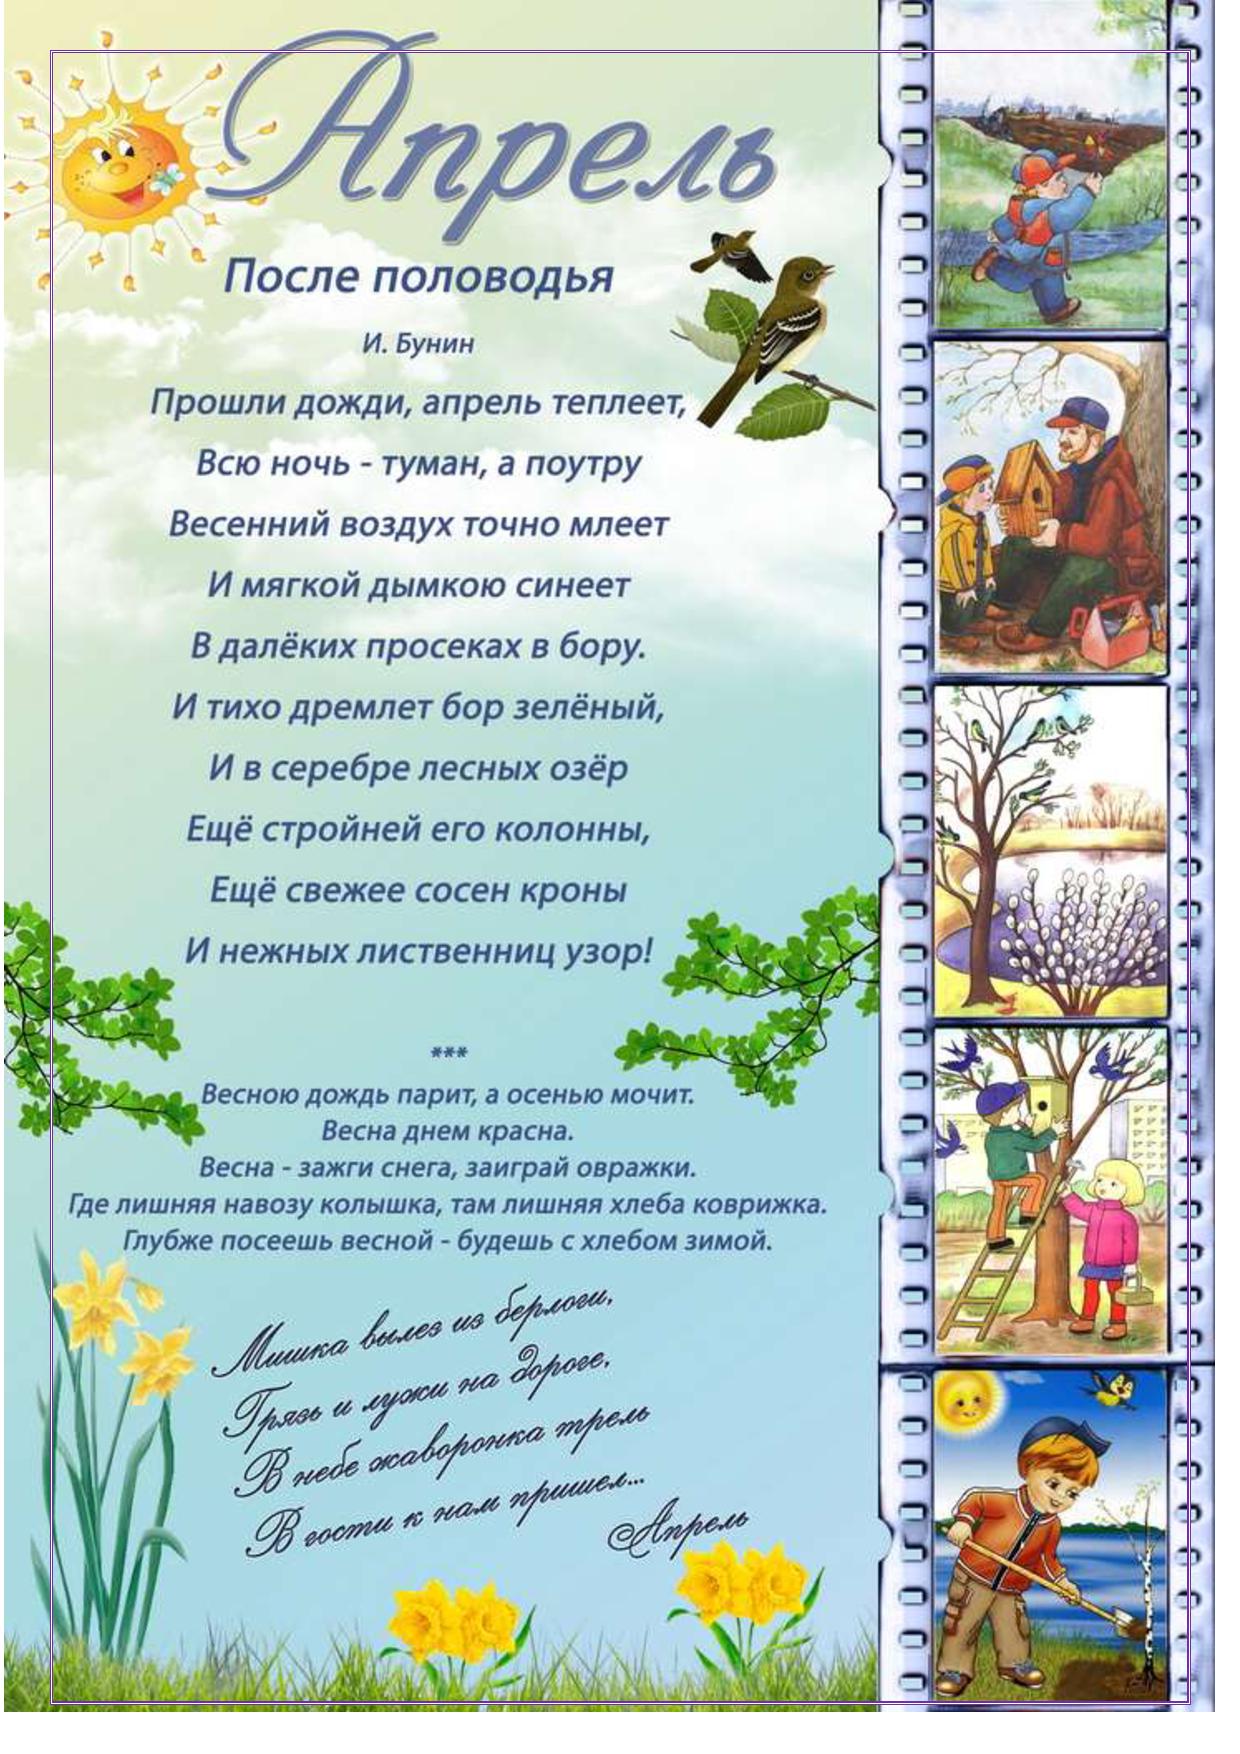 Информация про весну. Стих про весну в сад. Детские стихи про весну. Стихи для стенда про весну в детский сад.